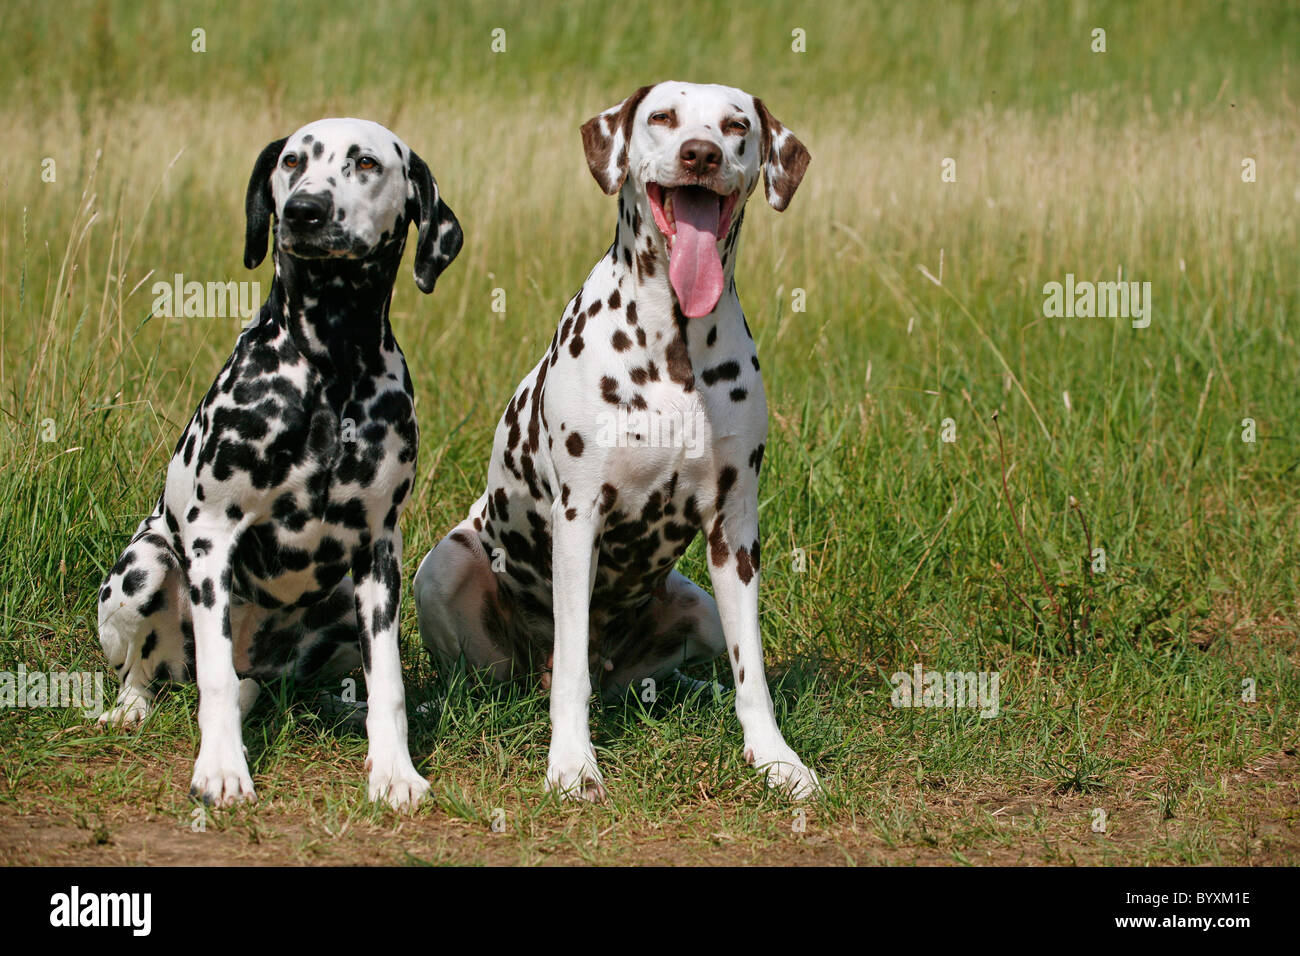 Two Dalmatian Dogs Meadow Stockfotos und  bilder Kaufen   Alamy